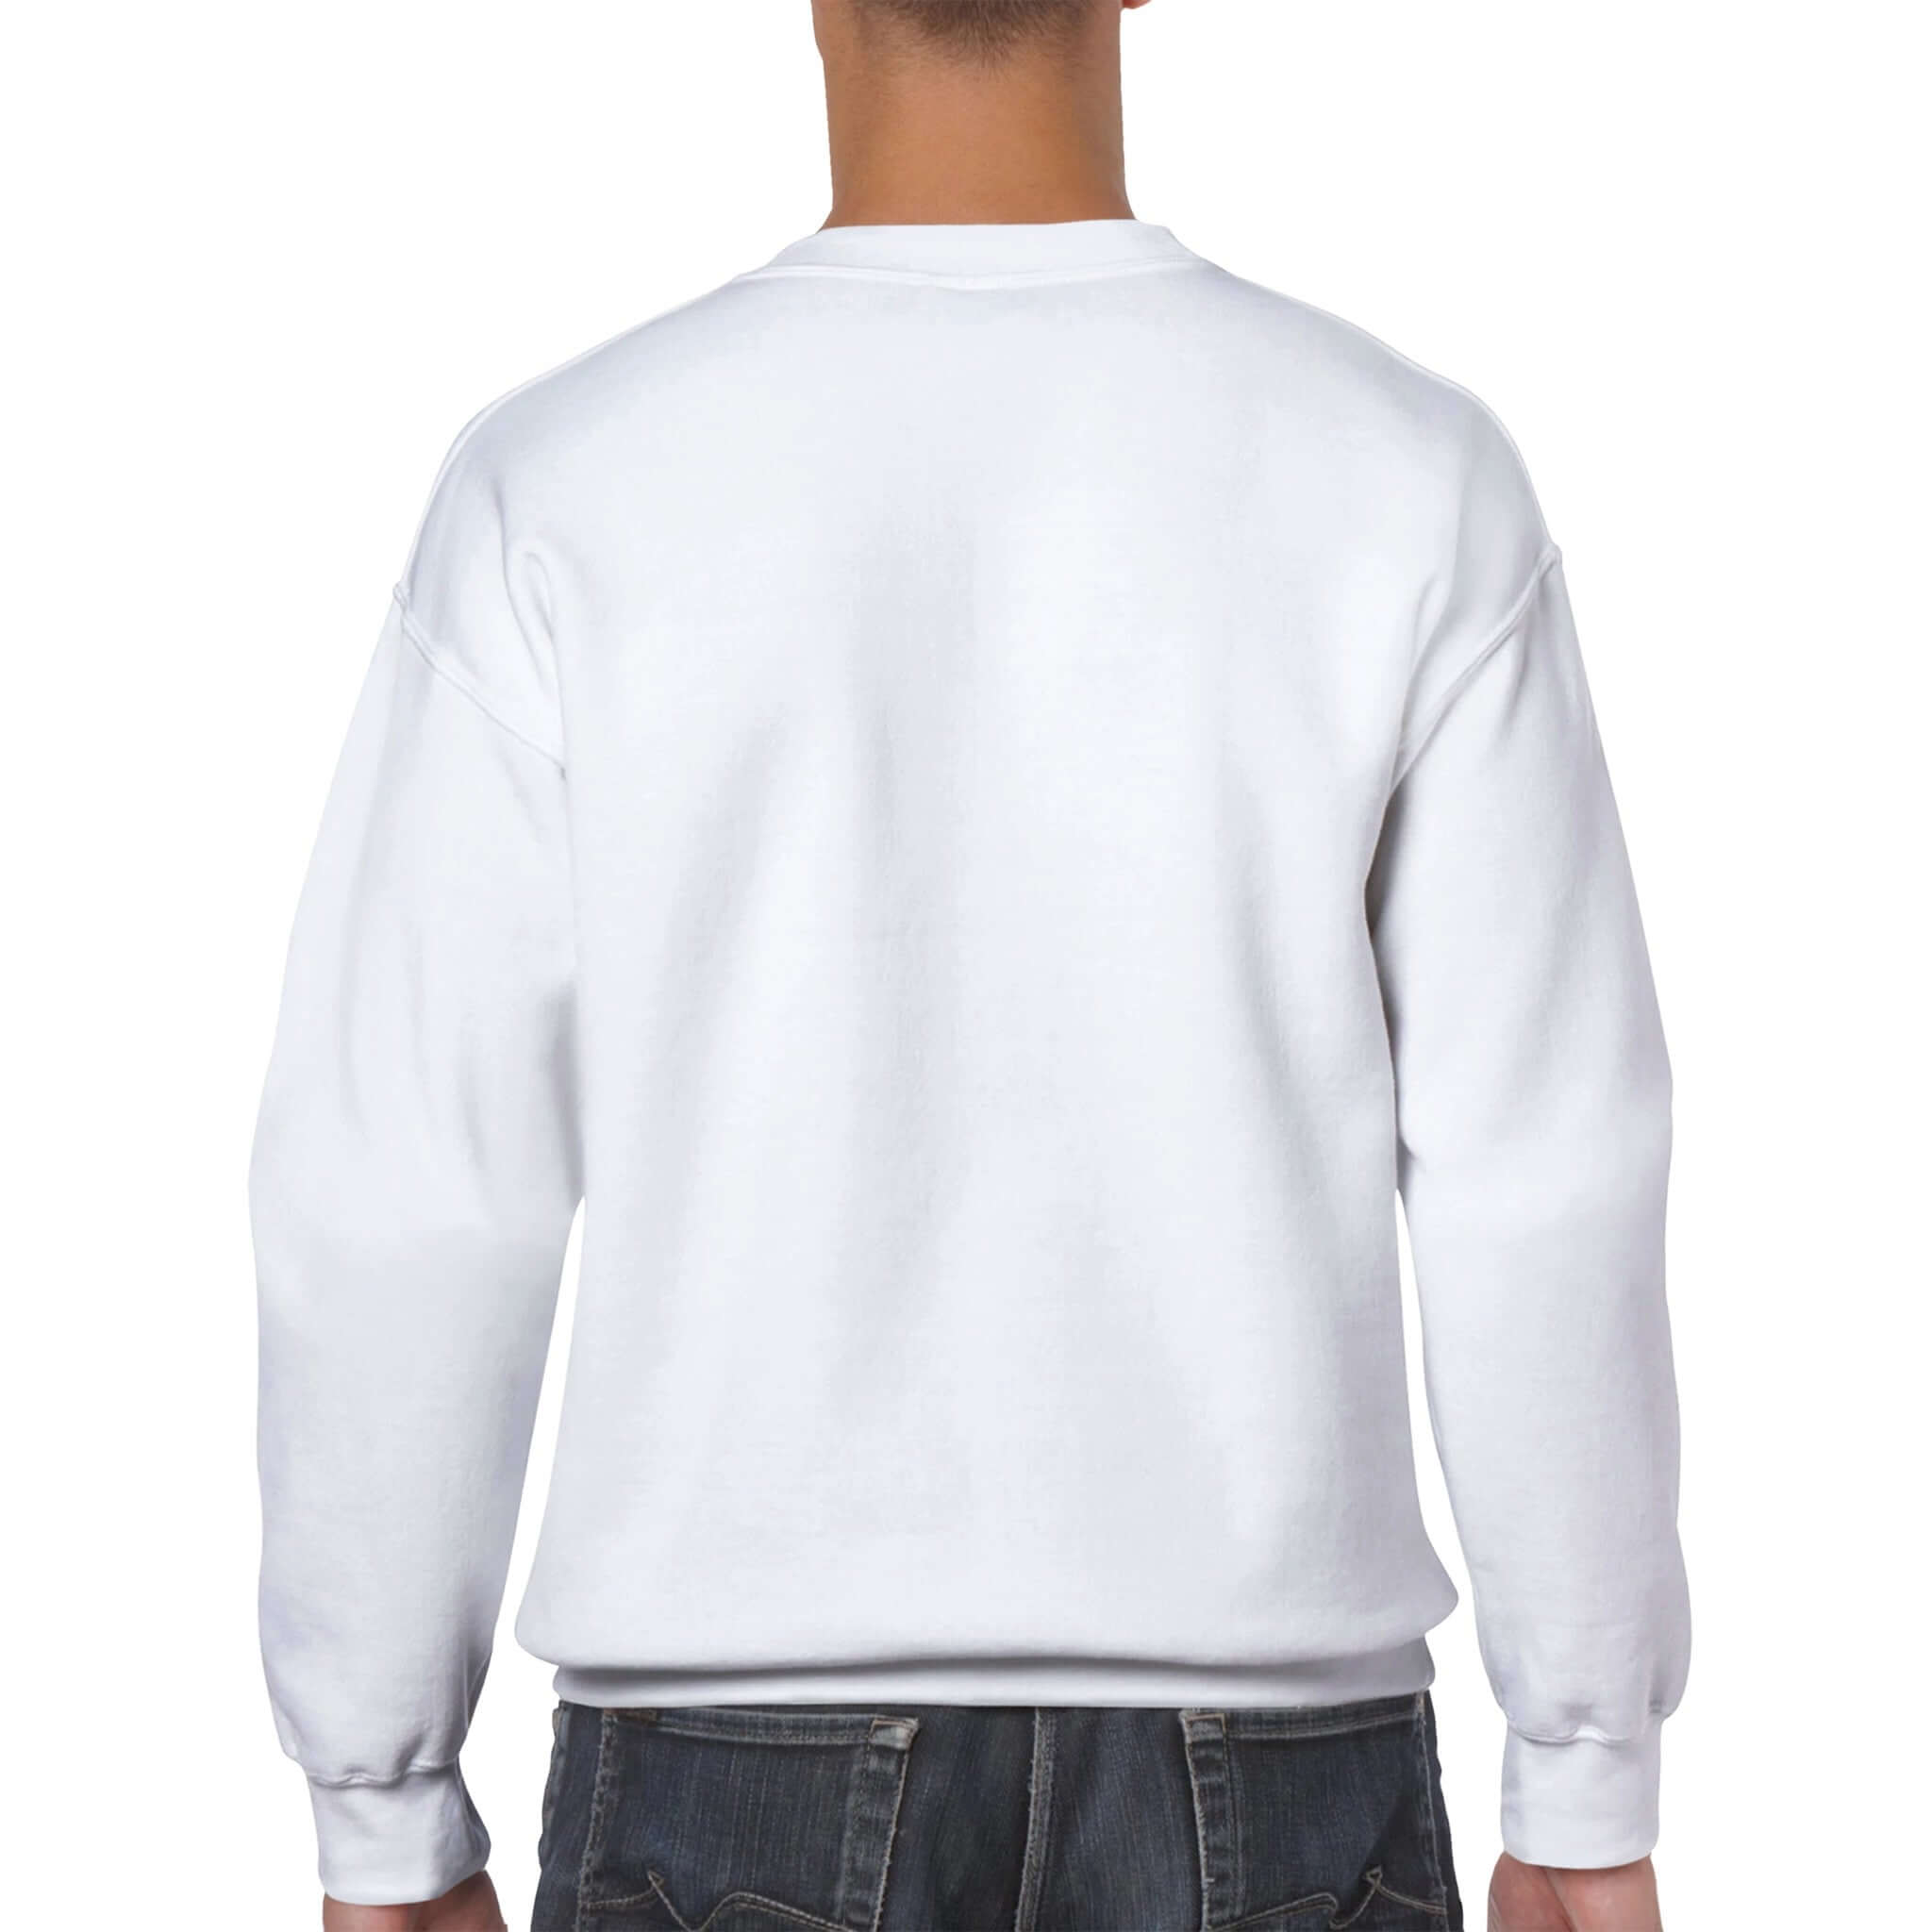 Bitcoin - Patchicon Essential: Unisex-Sweatshirt mit Rundhalsausschnitt